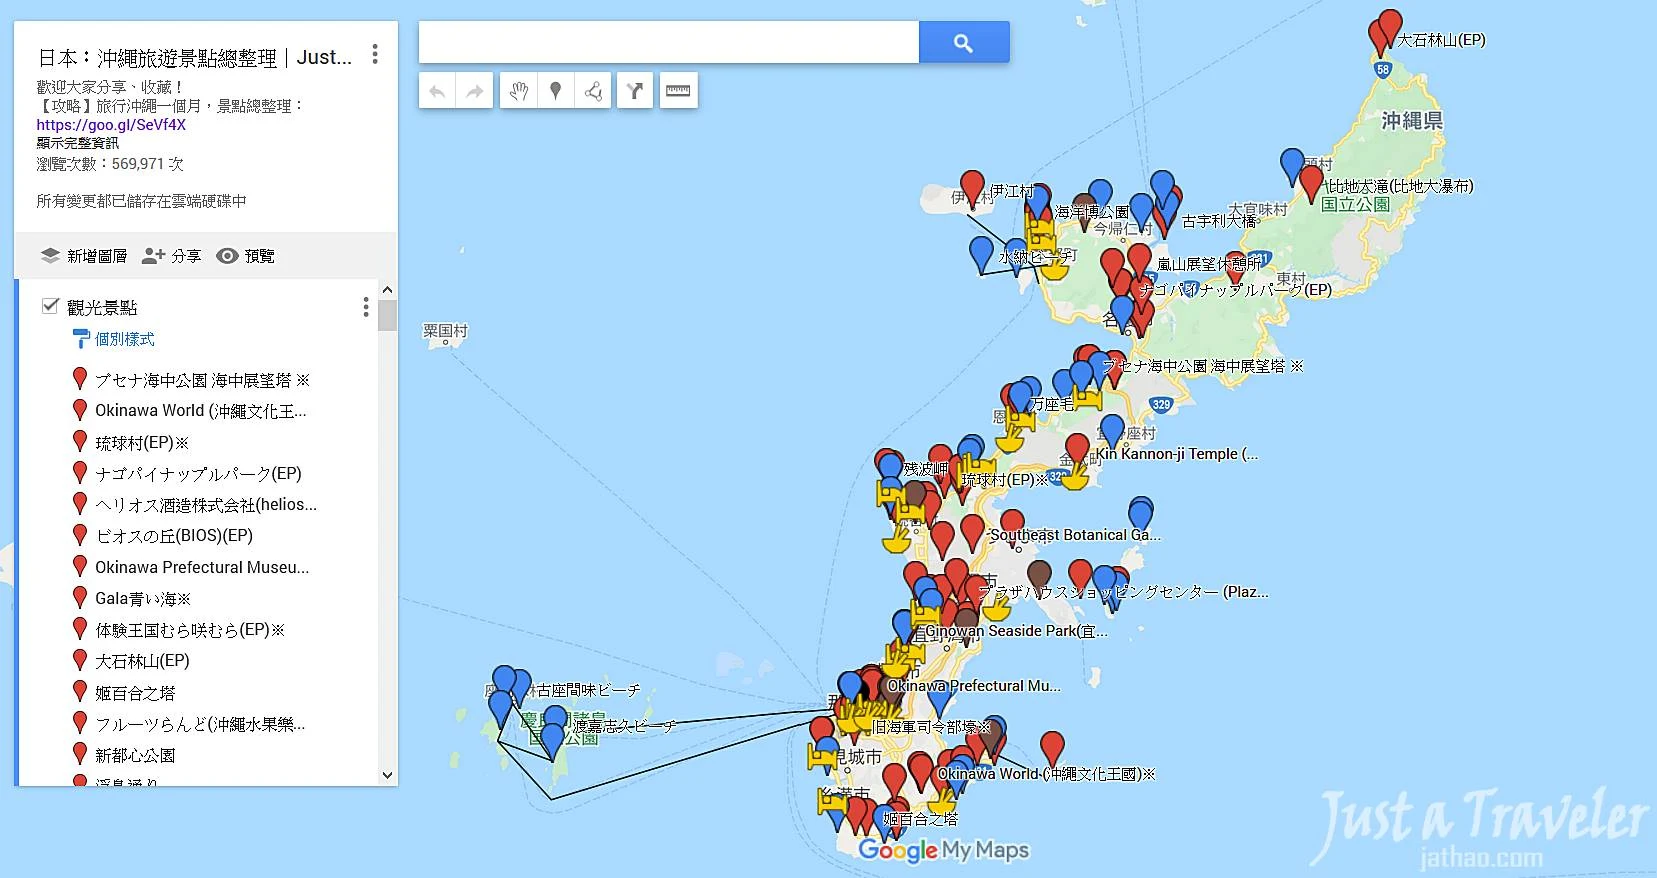 沖繩-沖繩自由行-沖繩旅遊-沖繩旅行-沖繩景點-推薦-沖繩旅遊地圖-日本-Okinawa-attractions-map